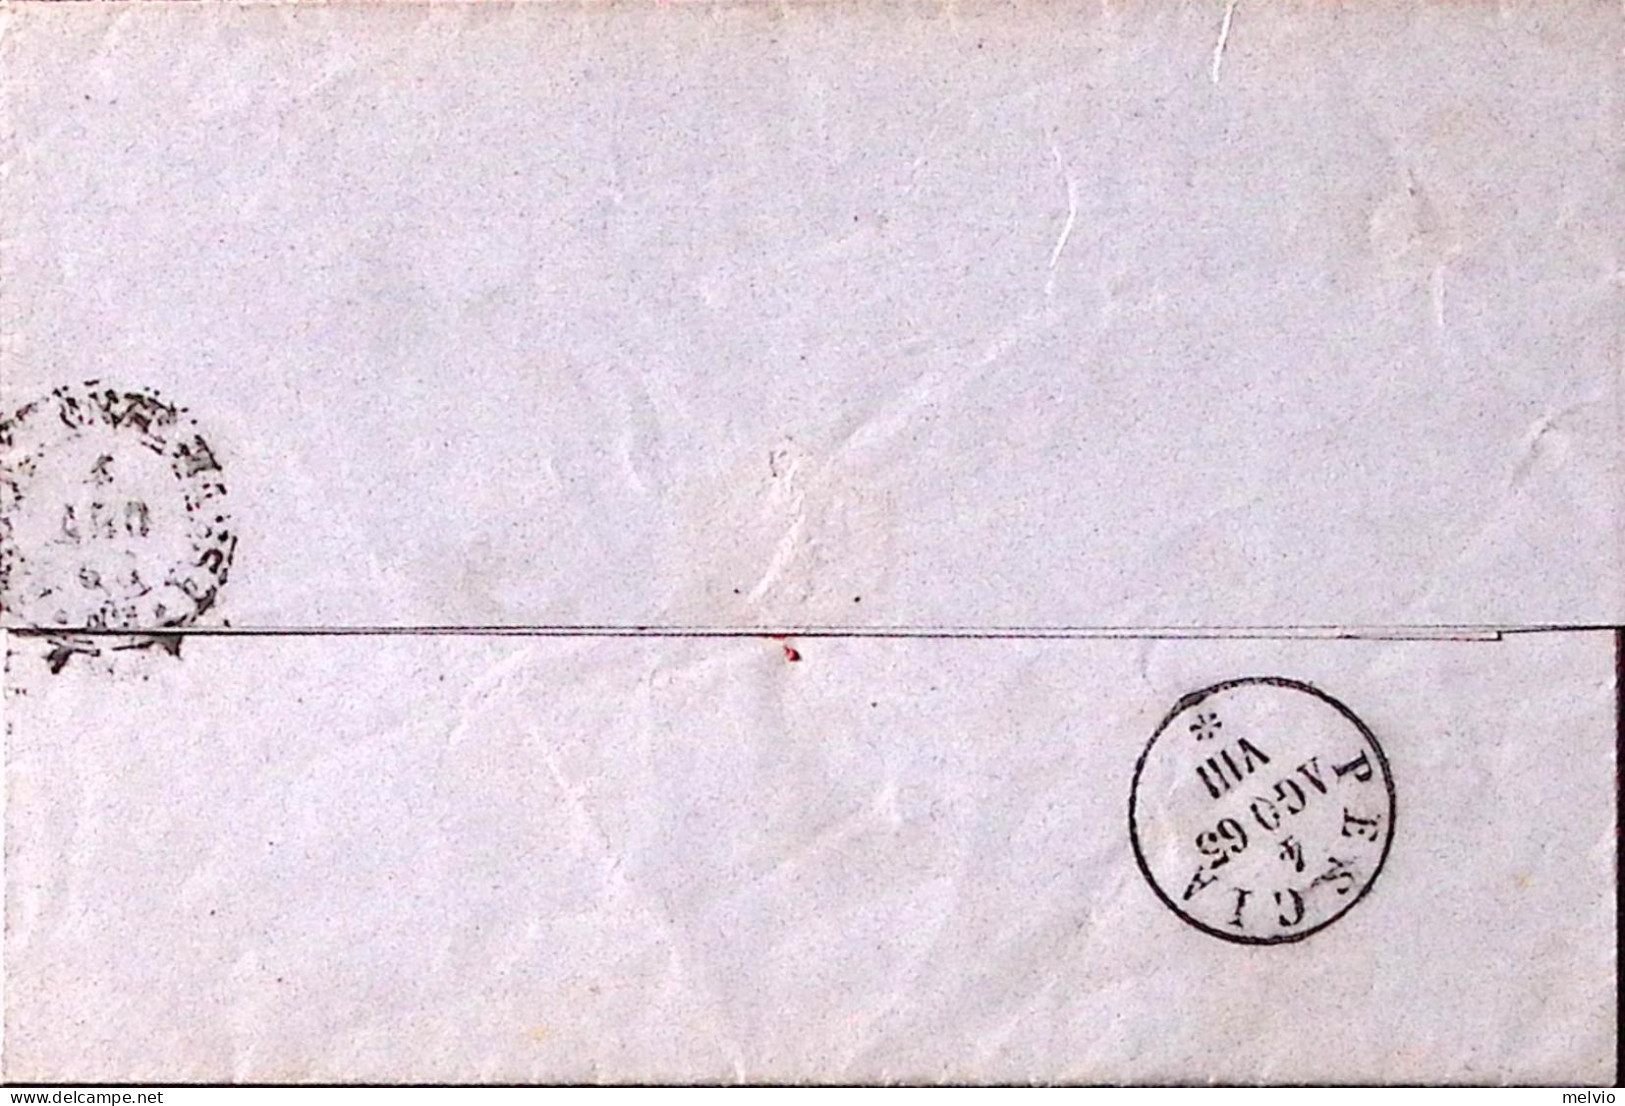 1863-LITOGRAFATO C. 15 (13) Isolato Su Lettera Completa Testo Firenze (3.8) - Marcophilie